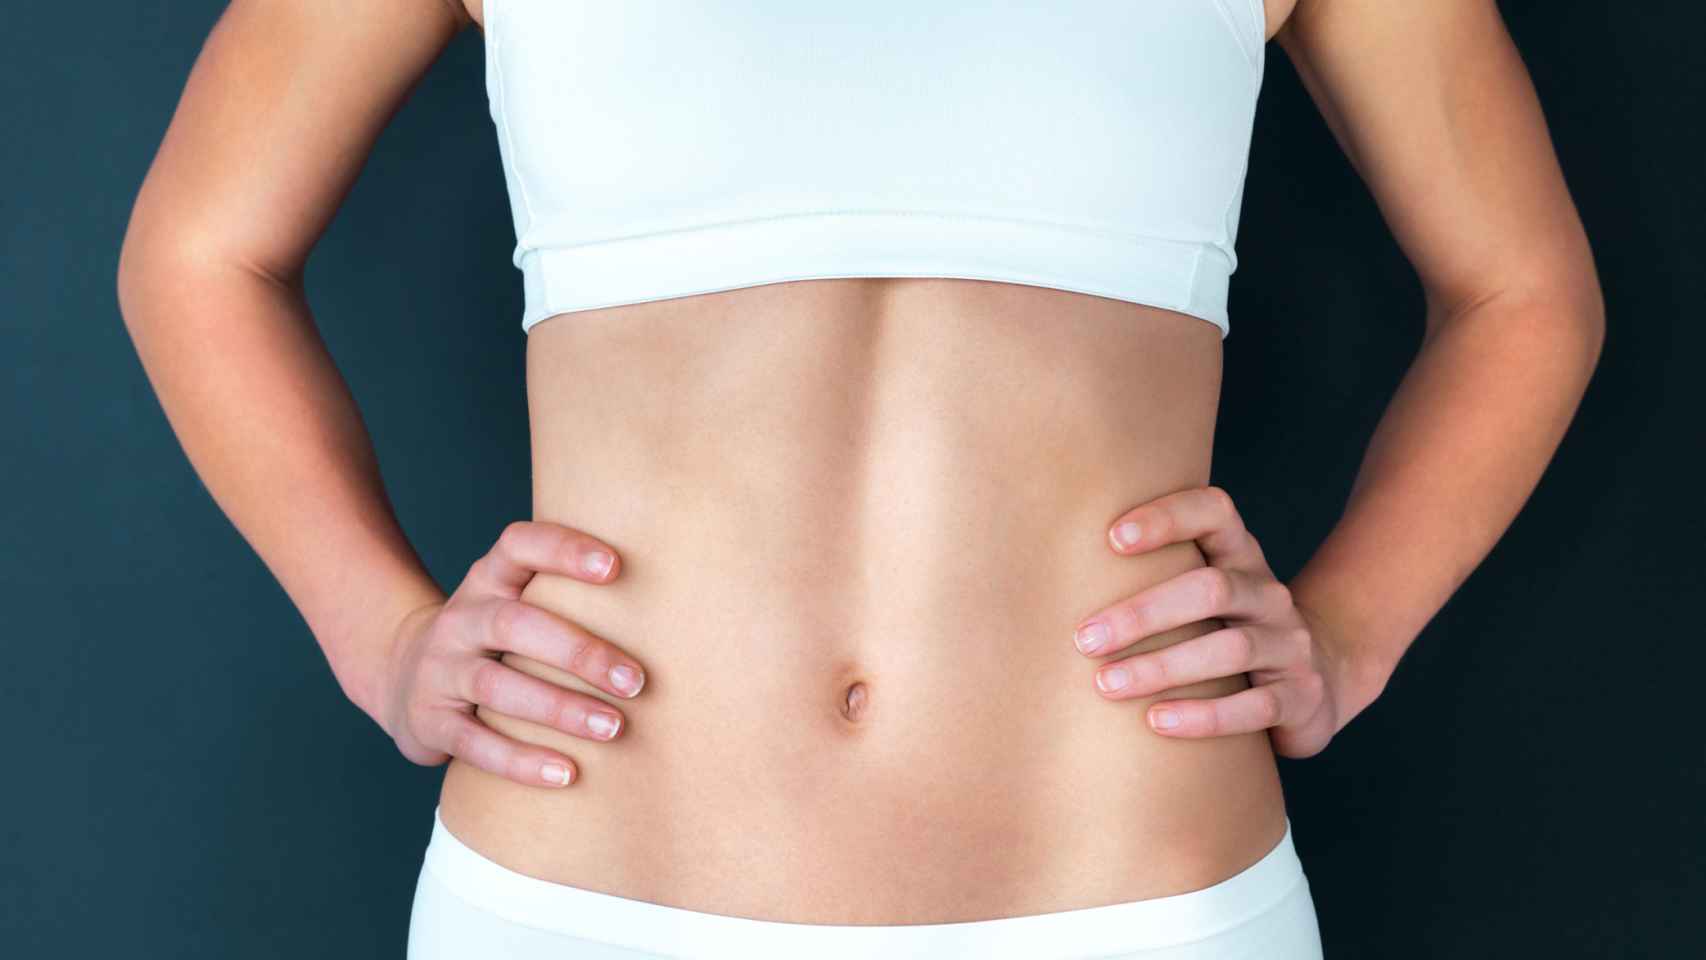 El ejercicio más efectivo para fortalecer el abdomen, según Harvard